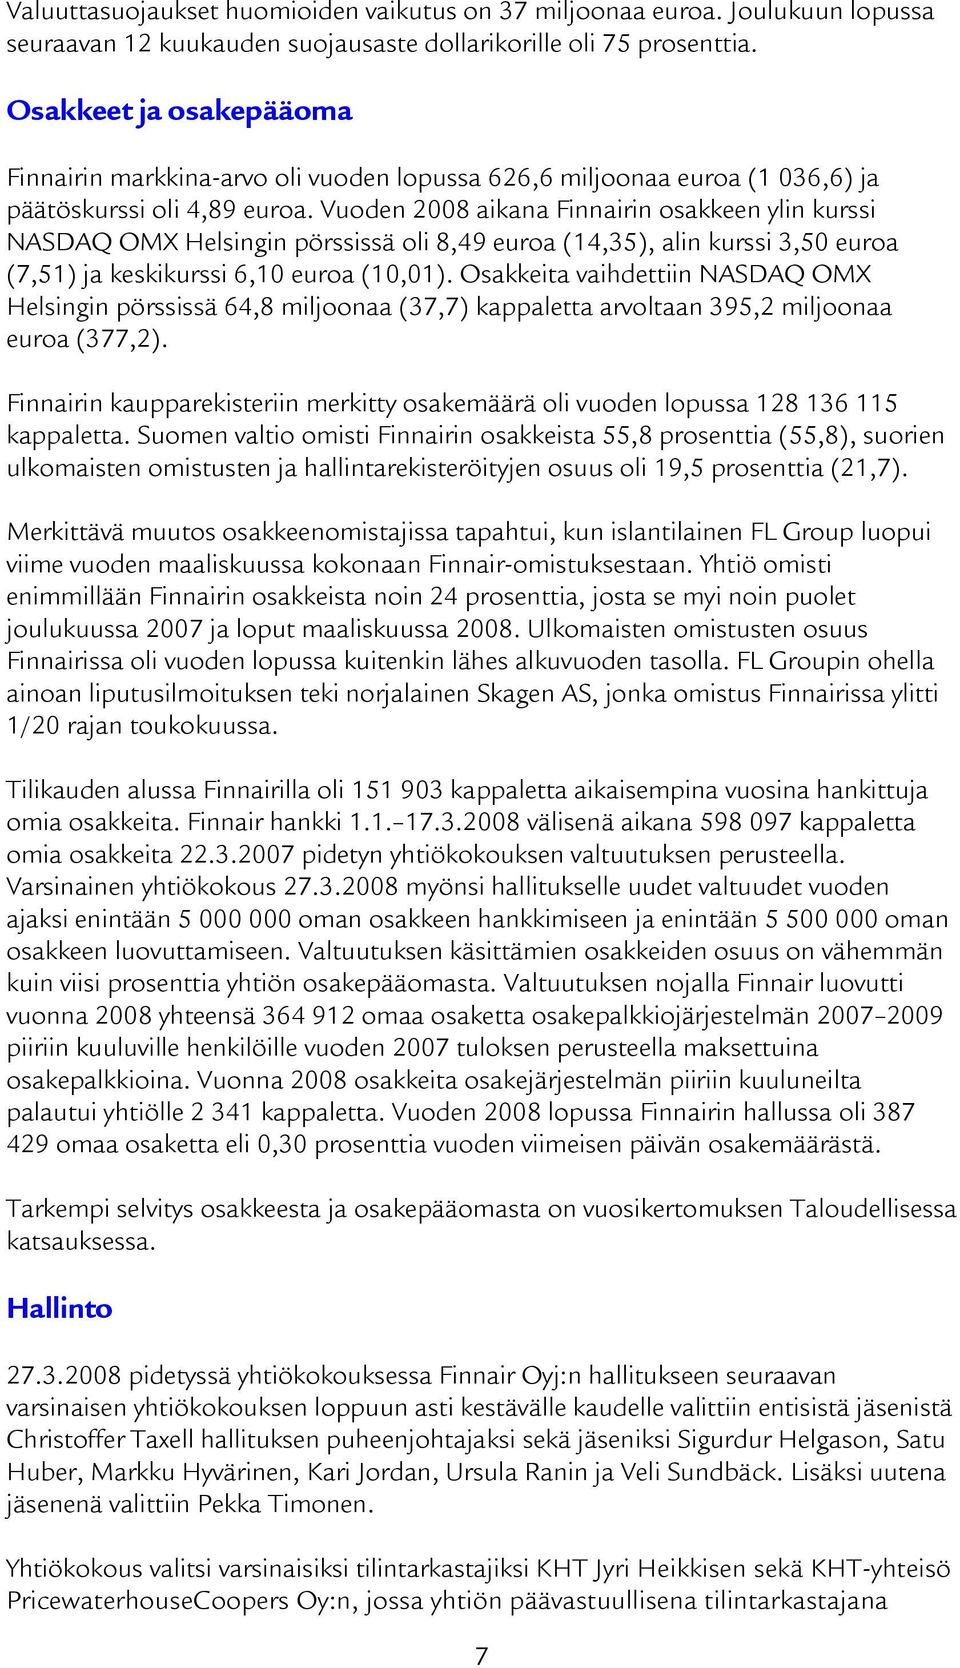 Vuoden 2008 aikana Finnairin osakkeen ylin kurssi NASDAQ OMX Helsingin pörssissä oli 8,49 euroa (14,35), alin kurssi 3,50 euroa (7,51) ja keskikurssi 6,10 euroa (10,01).